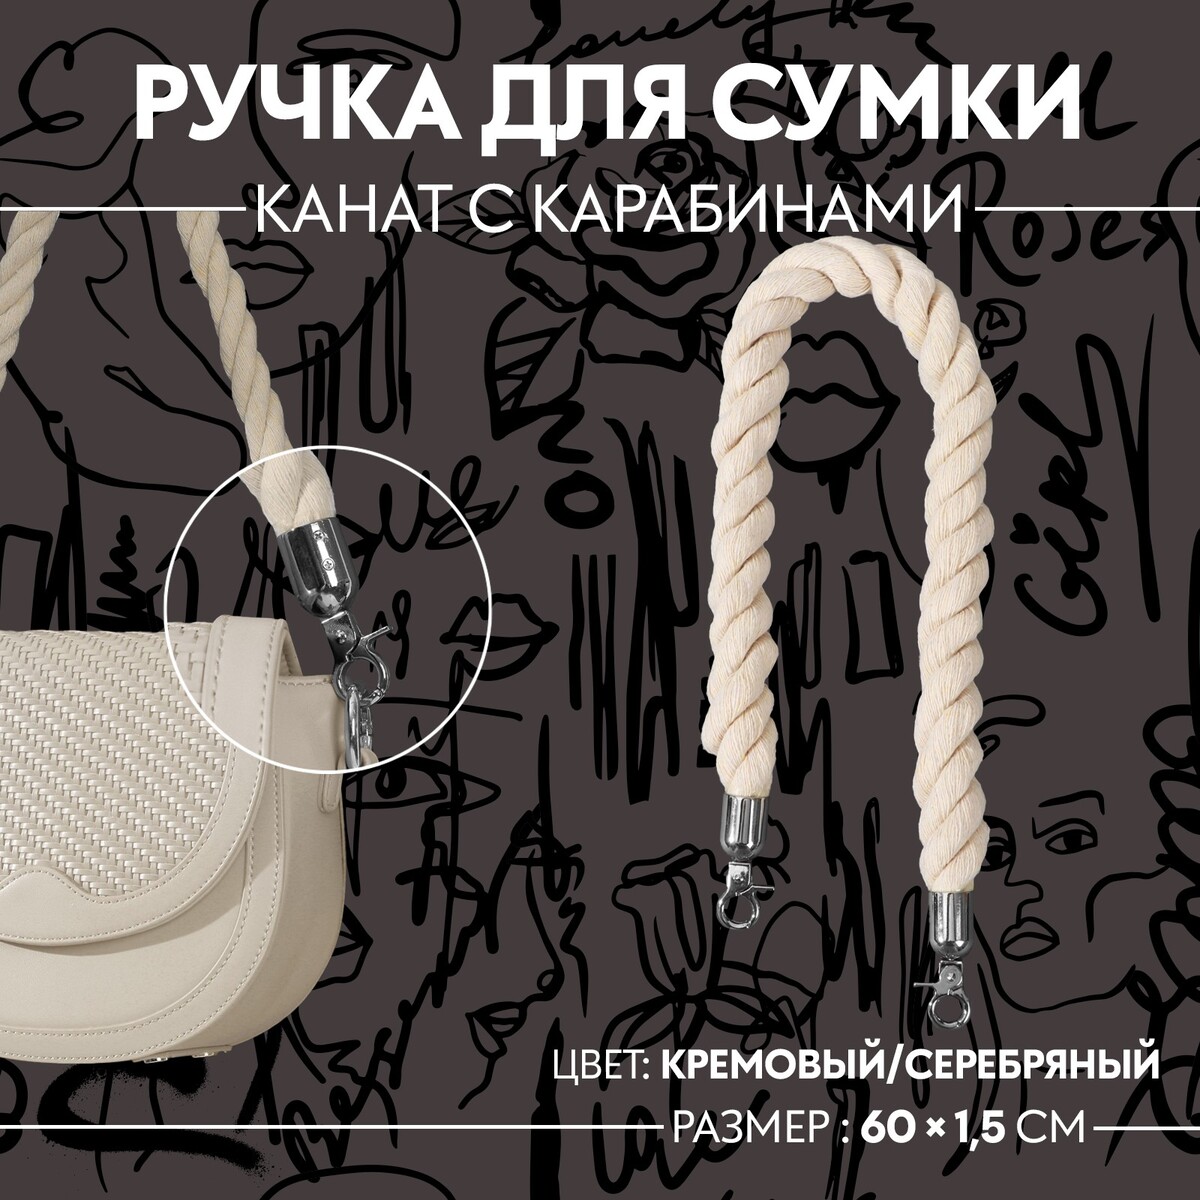 Ручка для сумки, канат, 60 × 1,5 см, с карабинами, цвет кремовый/серебряный канат для перетягивания 10м шт гимнаст 9 40